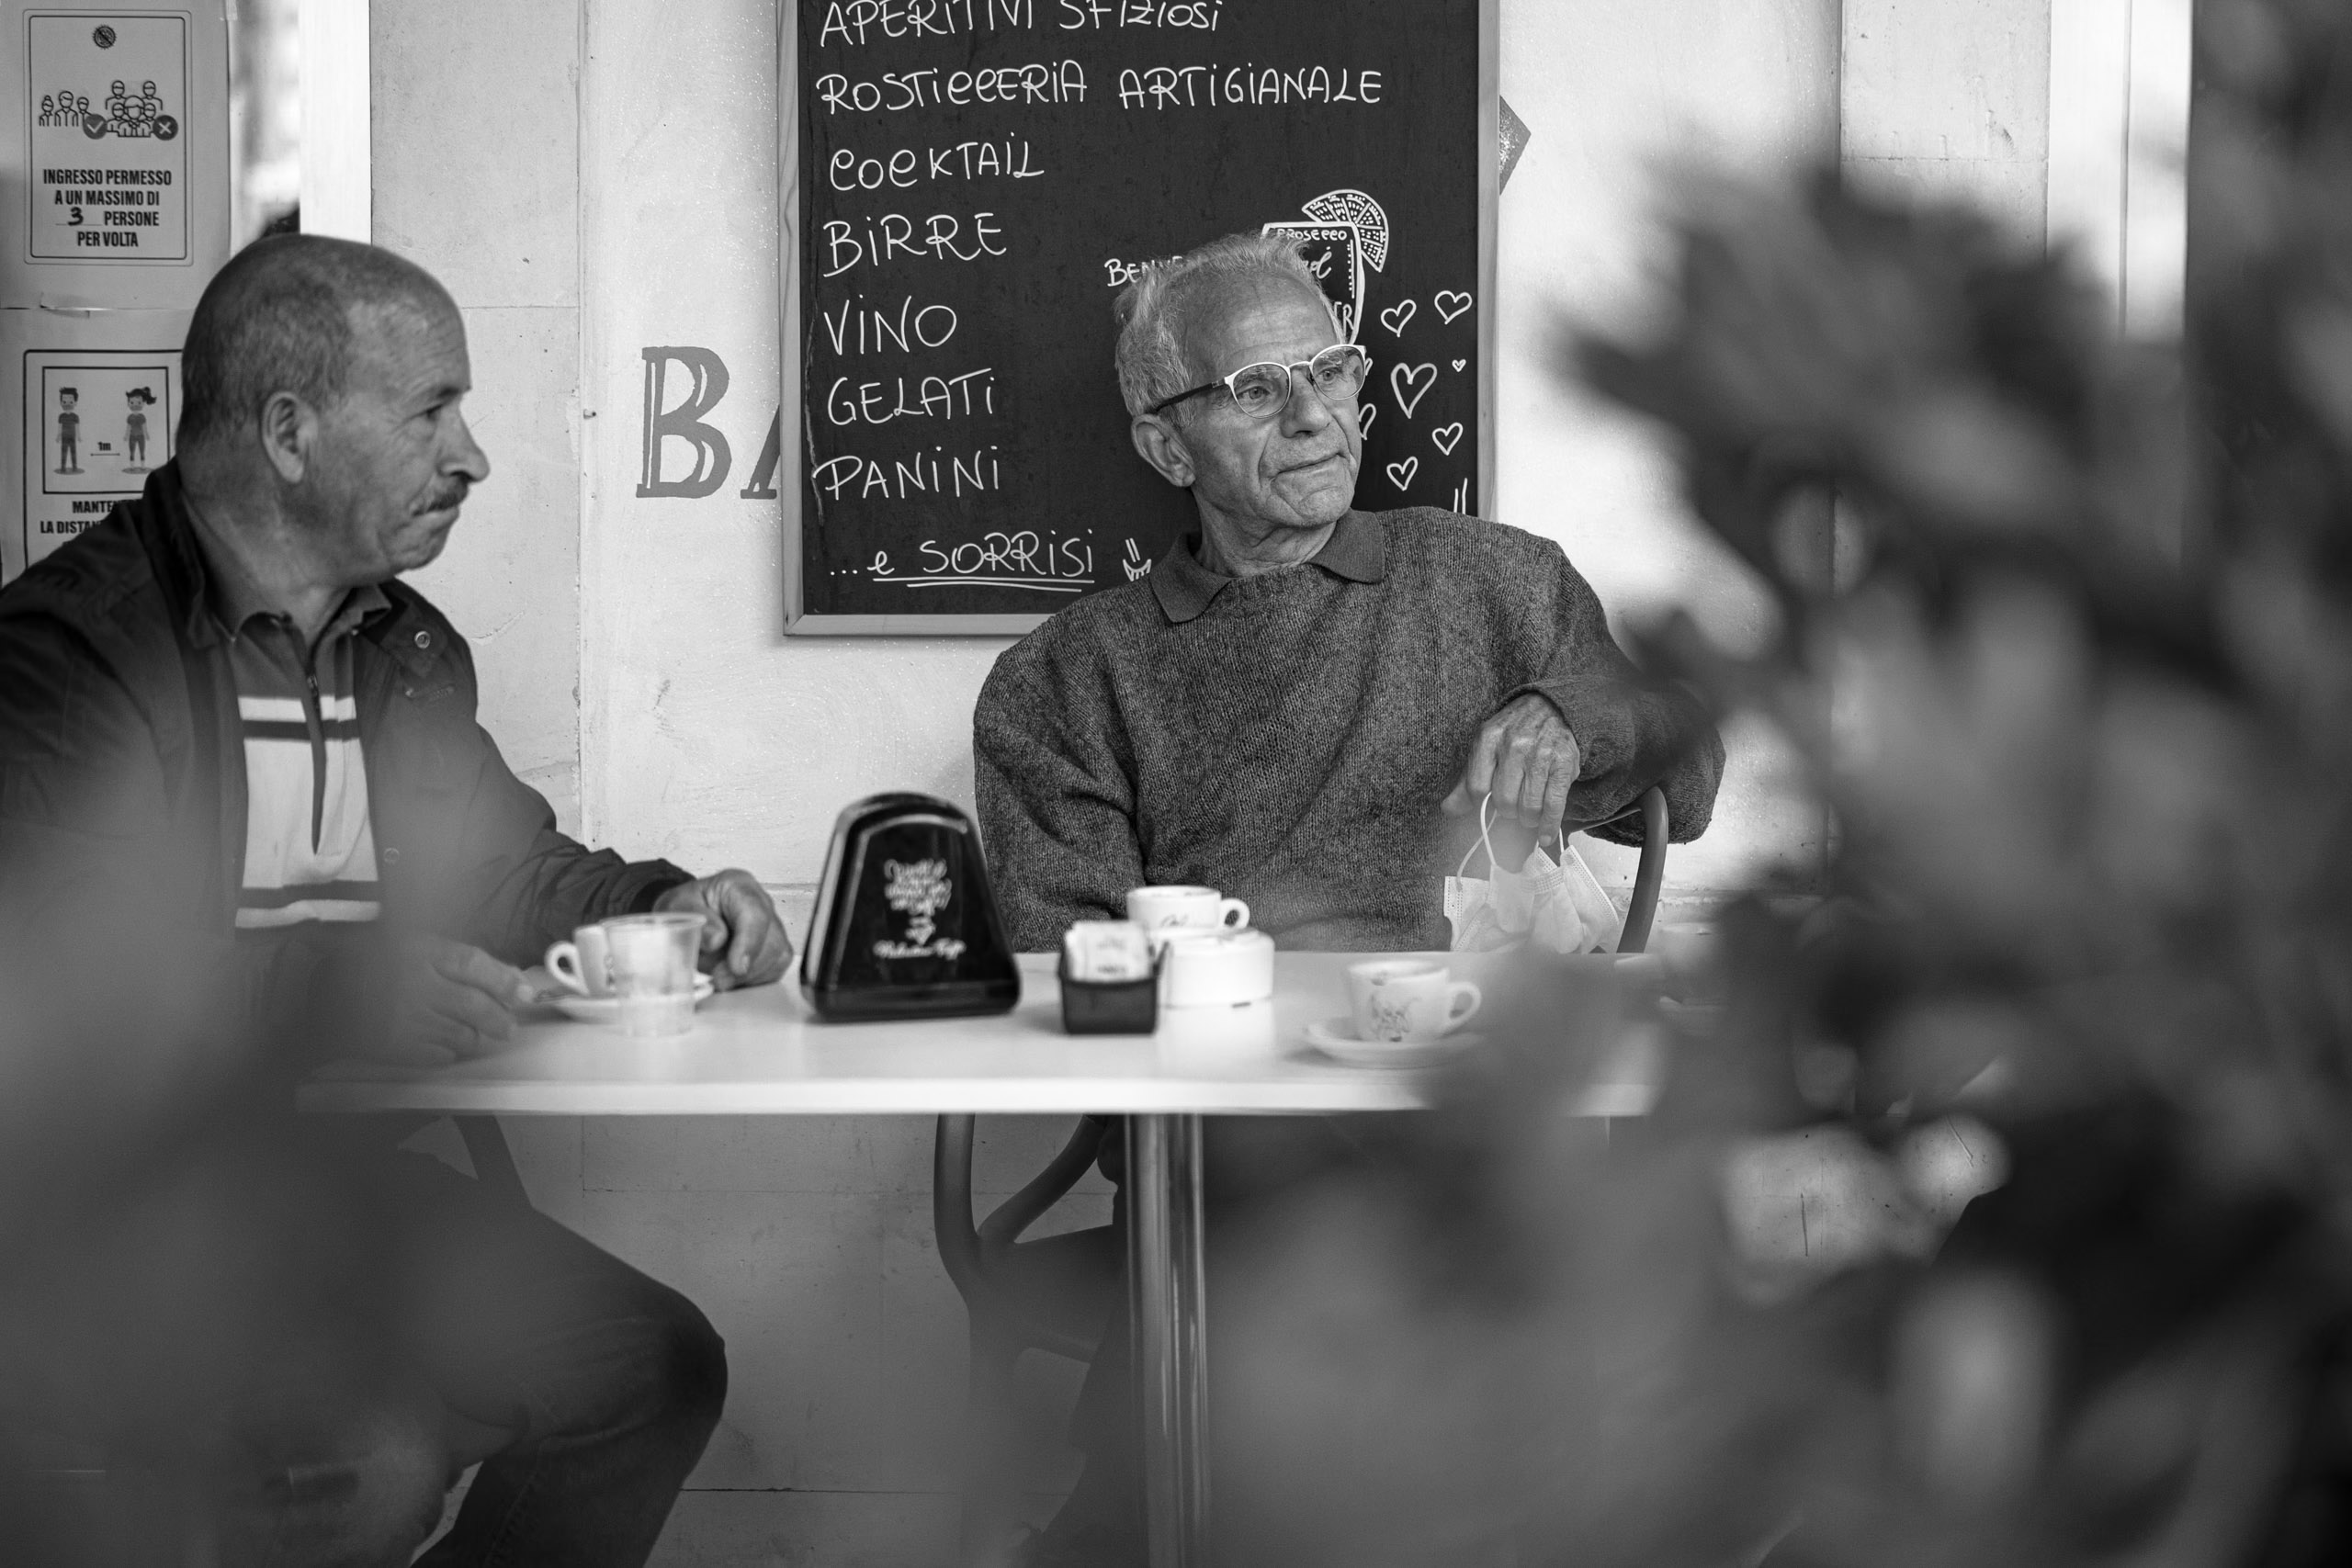 Zwei Männer sitzen an einem kleinen Cafétisch, einer gestikuliert mitten im Gespräch. Im Vordergrund ist eine verschwommene Pflanze zu sehen, im Hintergrund ist eine Menütafel zu erkennen. Schwarzweißfoto. © Fotografie Tomas Rodriguez